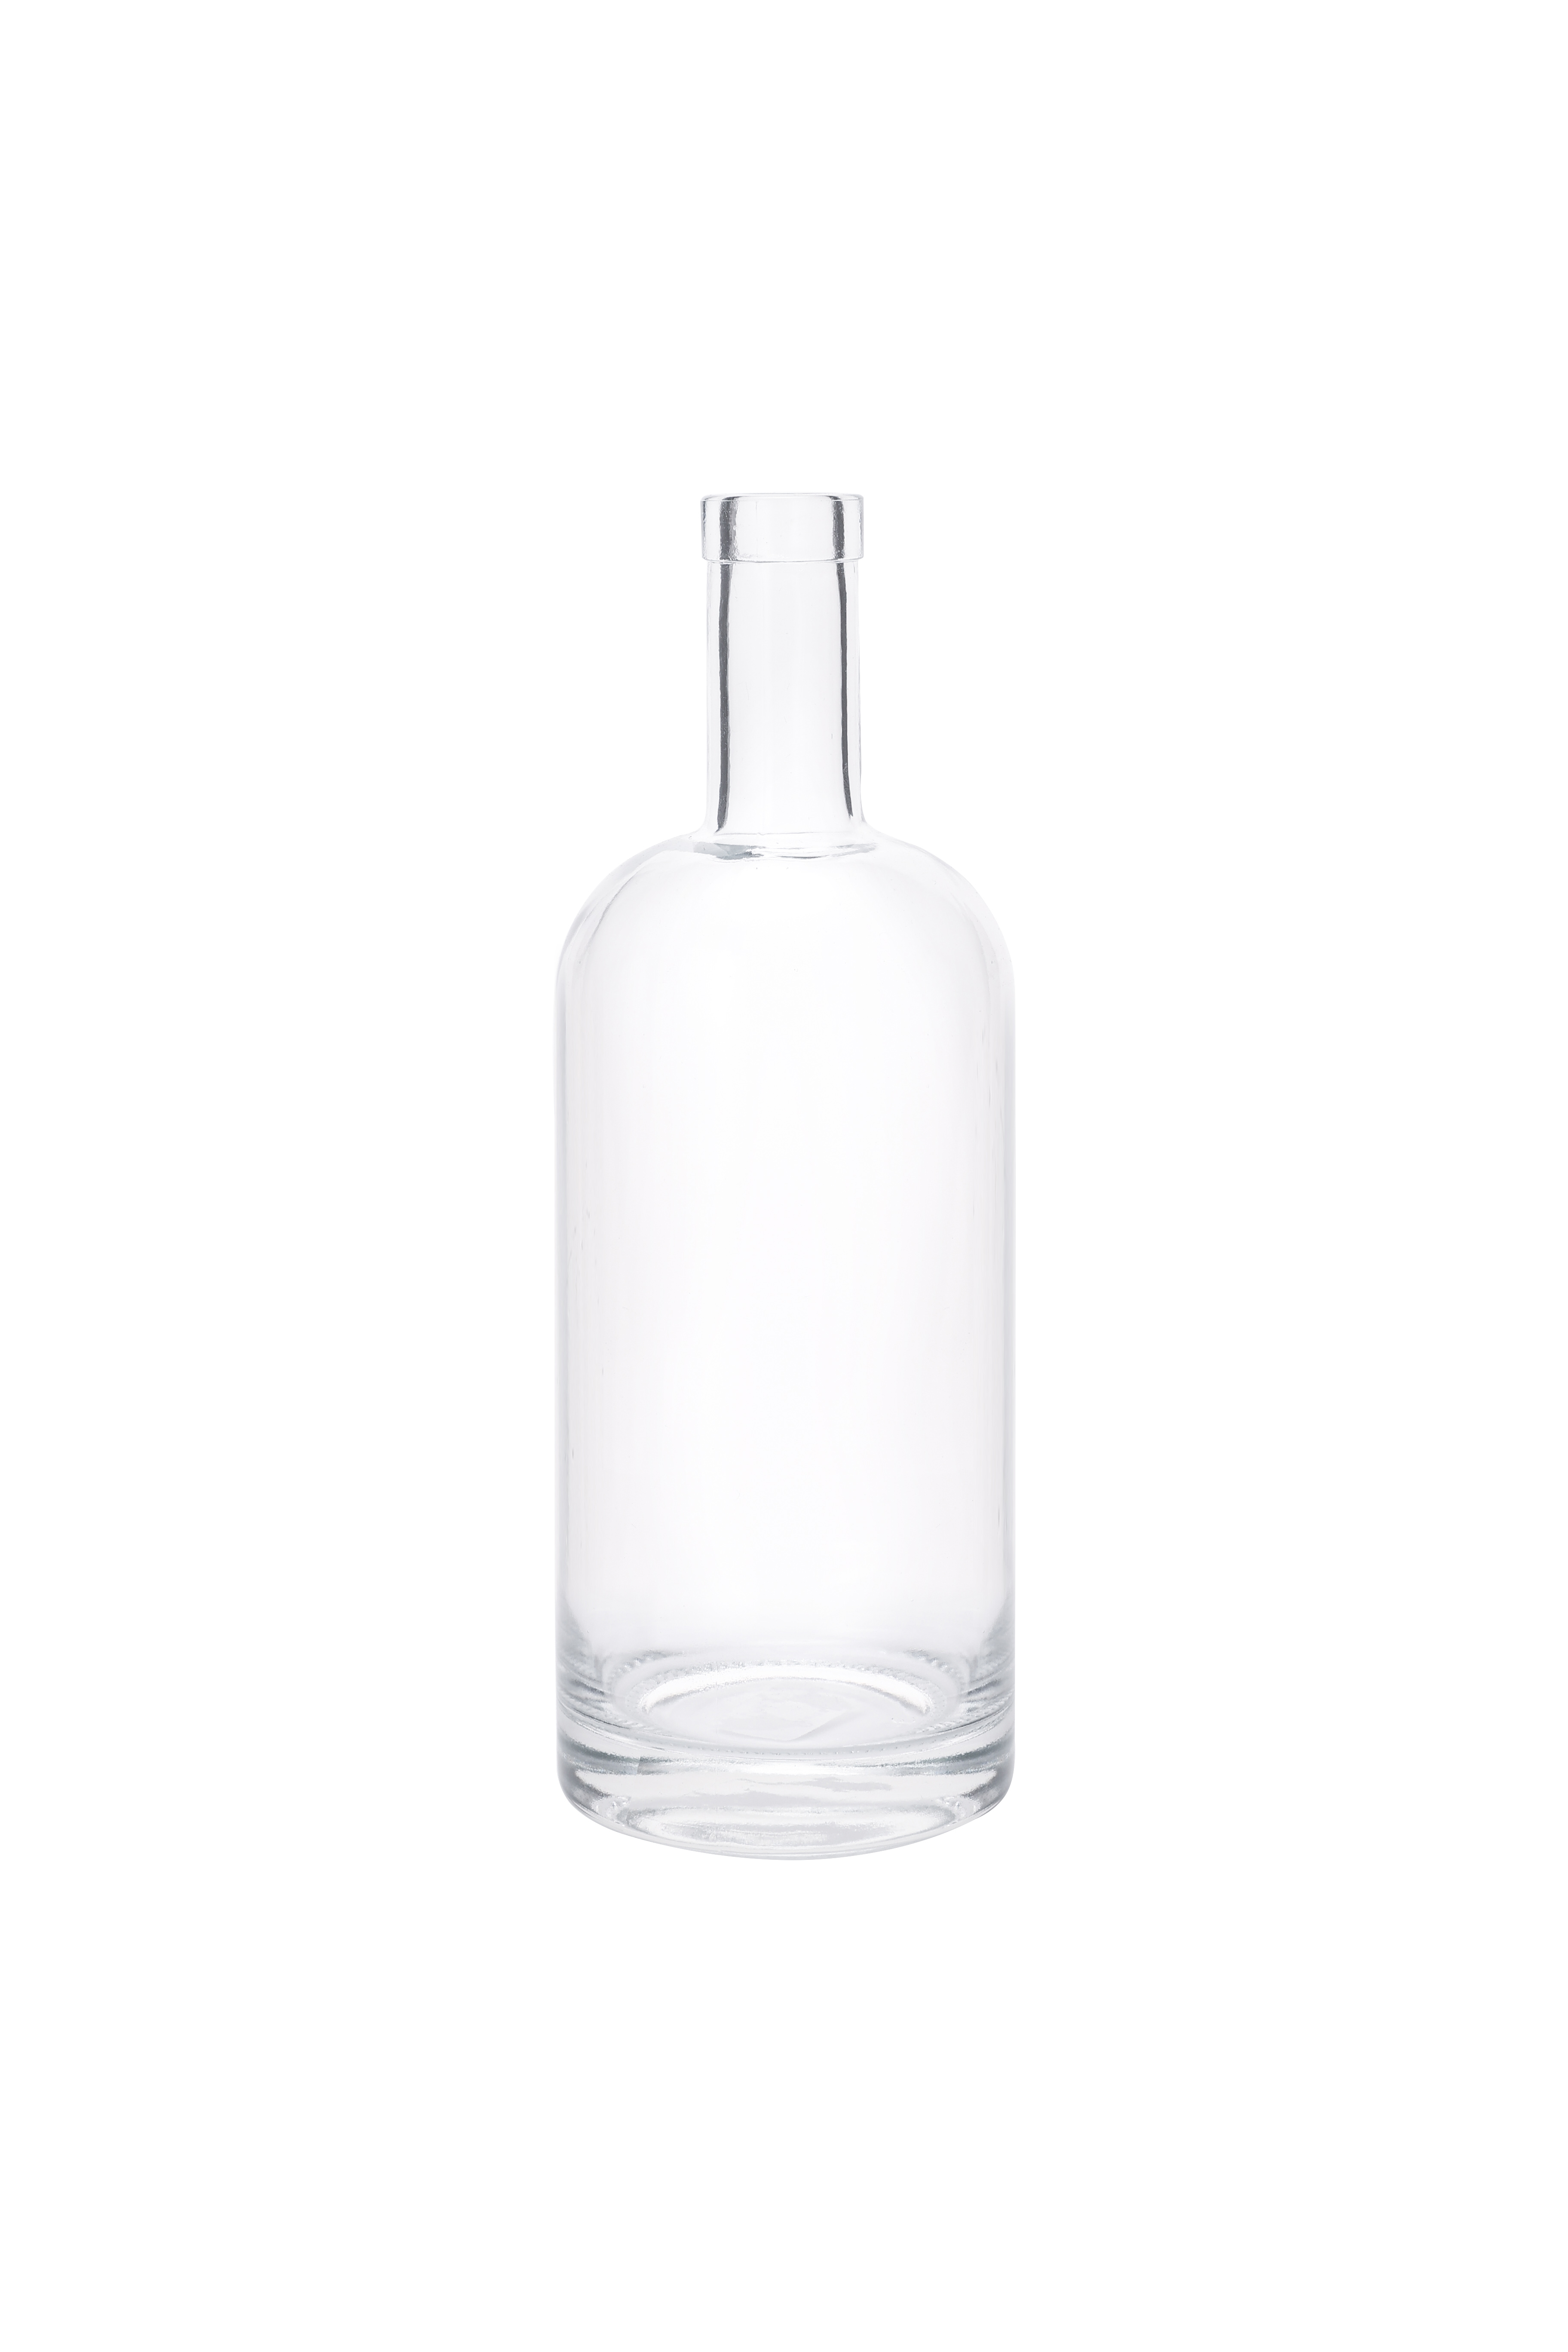 Custom Luxury 750ml,700ml,500ml,375ml Rum Vodka Whisky Liquor Gin Glass Bottle